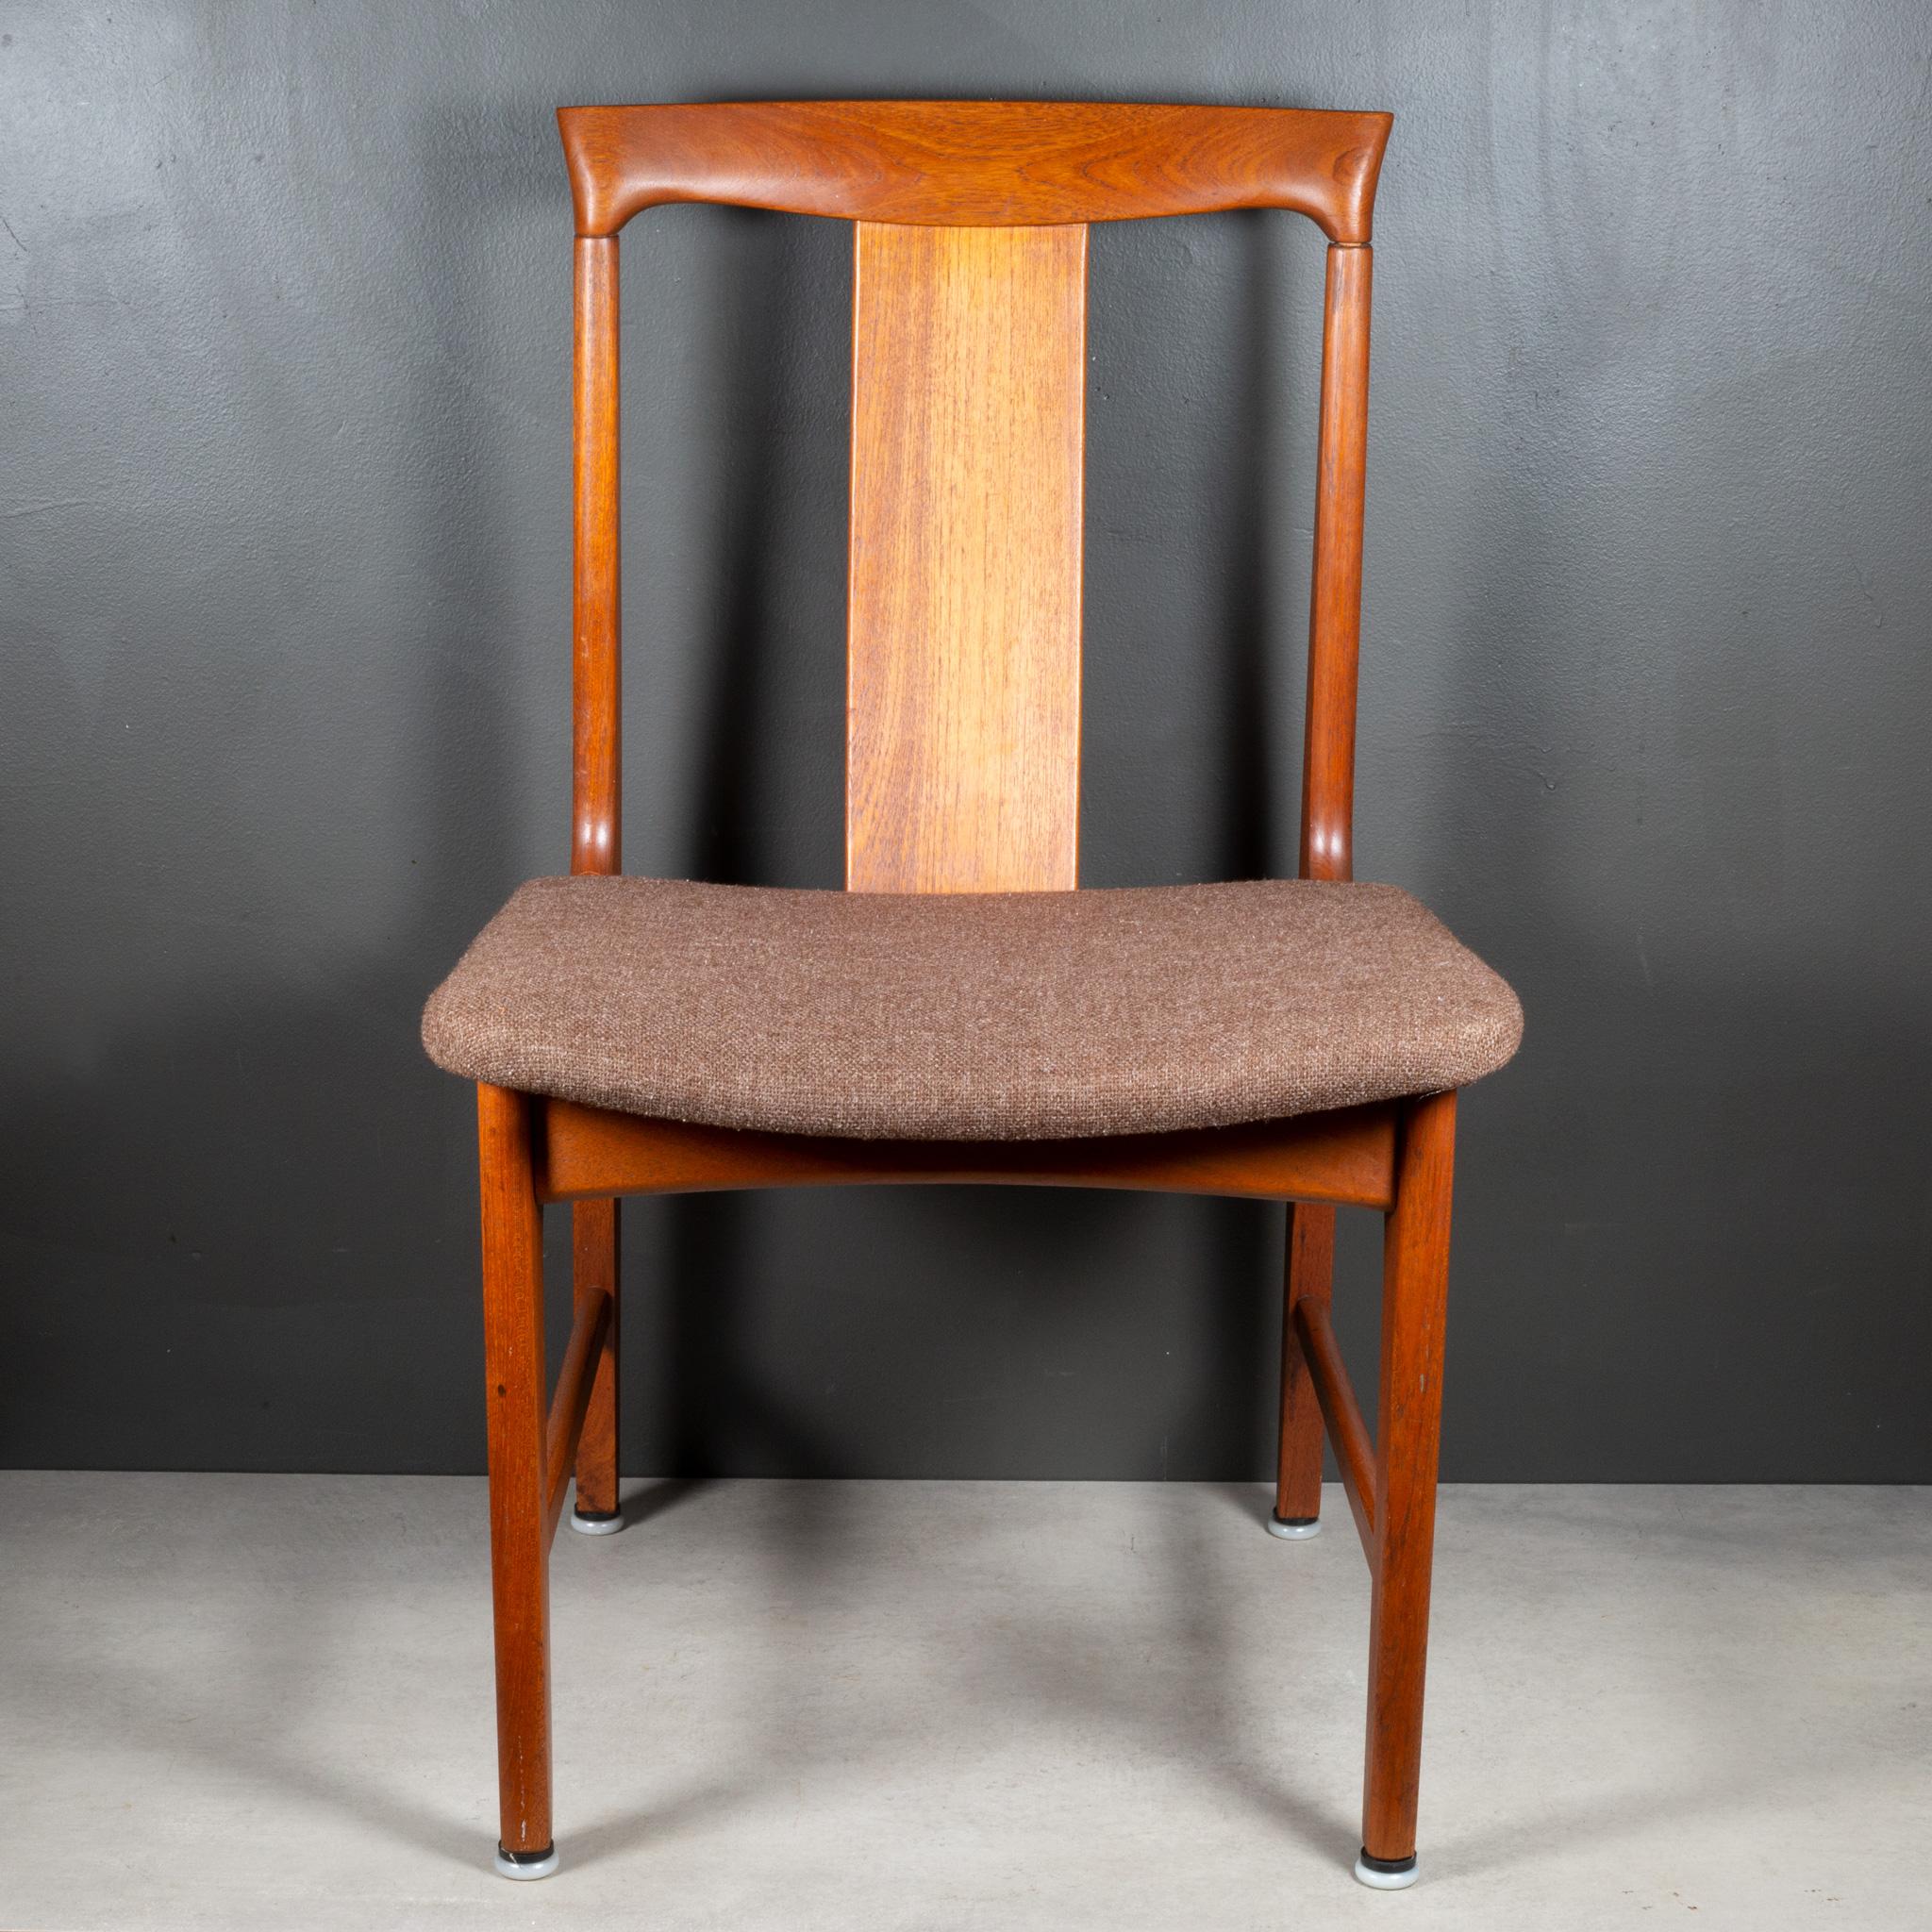 À PROPOS DE

Un ensemble de chaises de salle à manger en teck sculpté du milieu du siècle avec des sièges en laine d'origine. Quatre chaises latérales et deux chaises capitaines hautes. Chacun est estampillé 